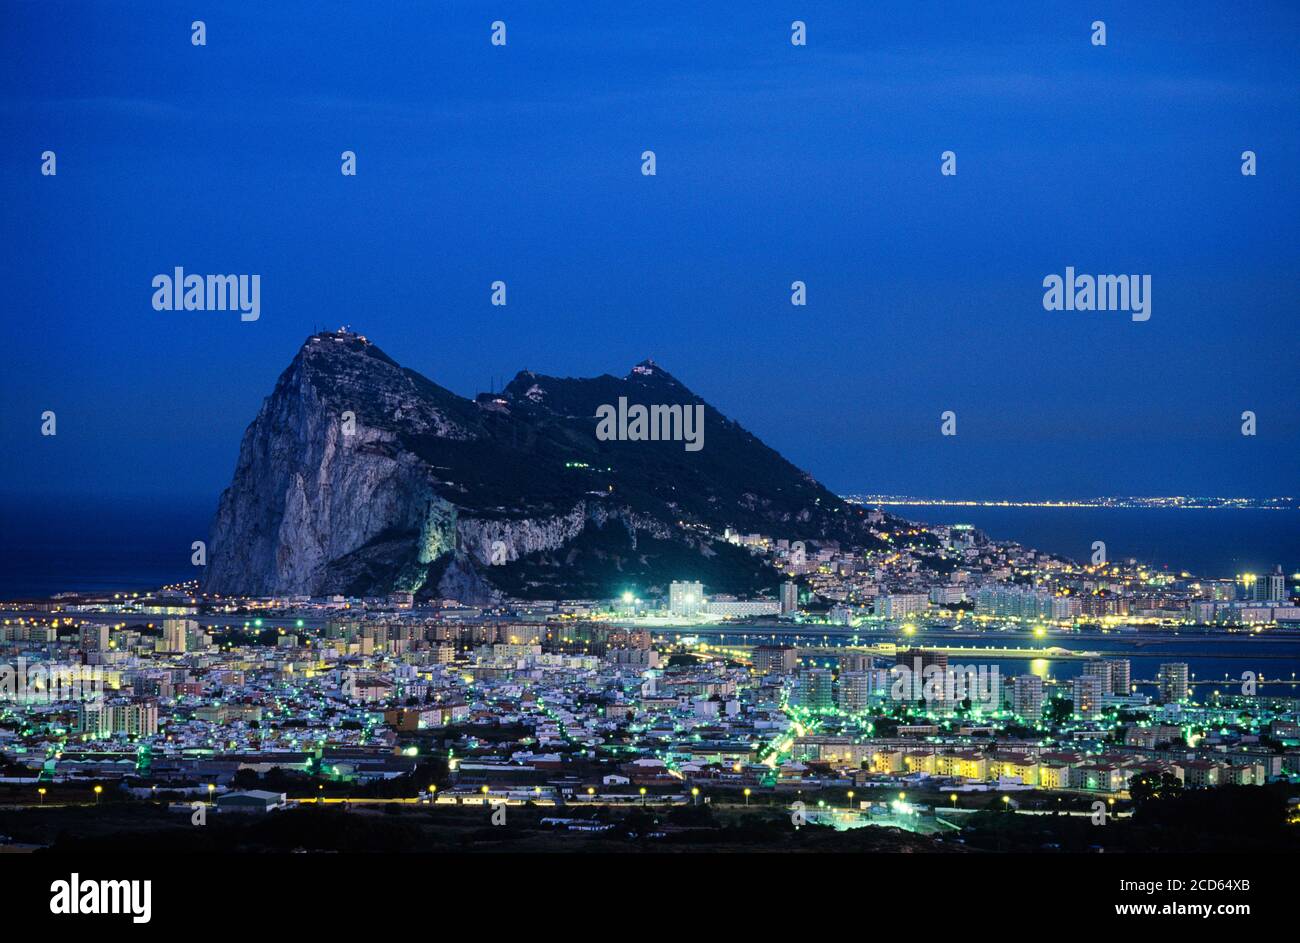 Rocher de Gibraltar et ville de Gibraltar la nuit Banque D'Images